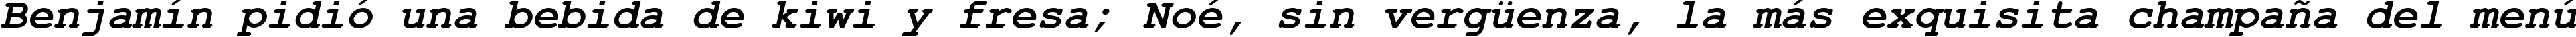 Пример написания шрифтом Courier New Bold Italic текста на испанском